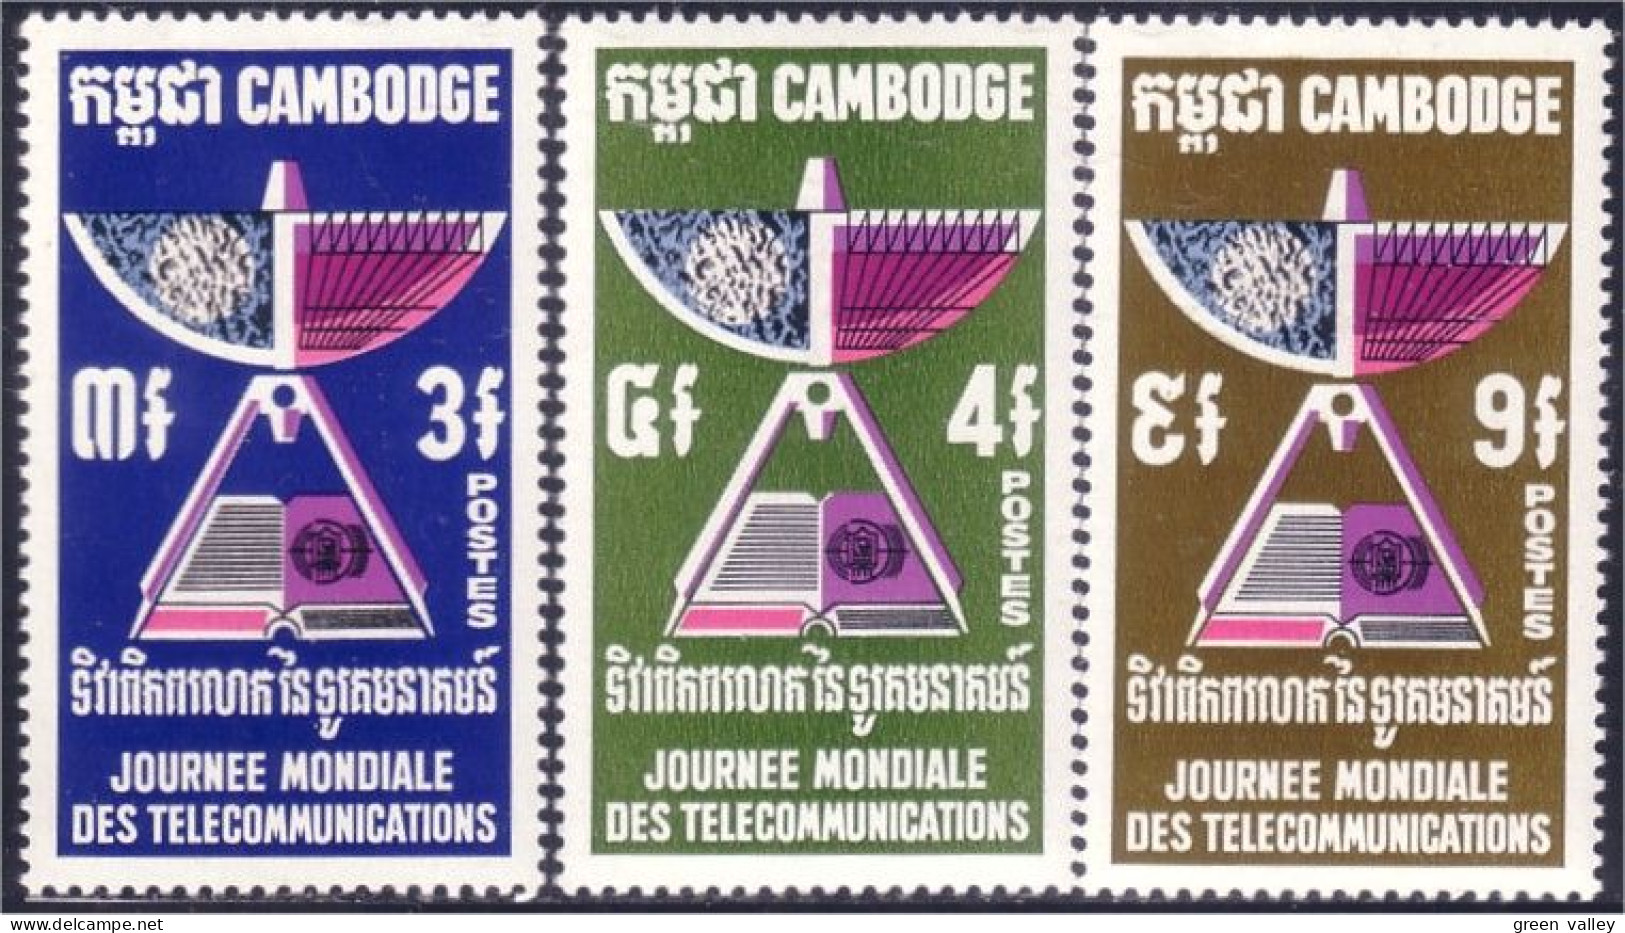 534 Cambodge Satellite Communications MH * Neuf (KAM-226) - Cambodia